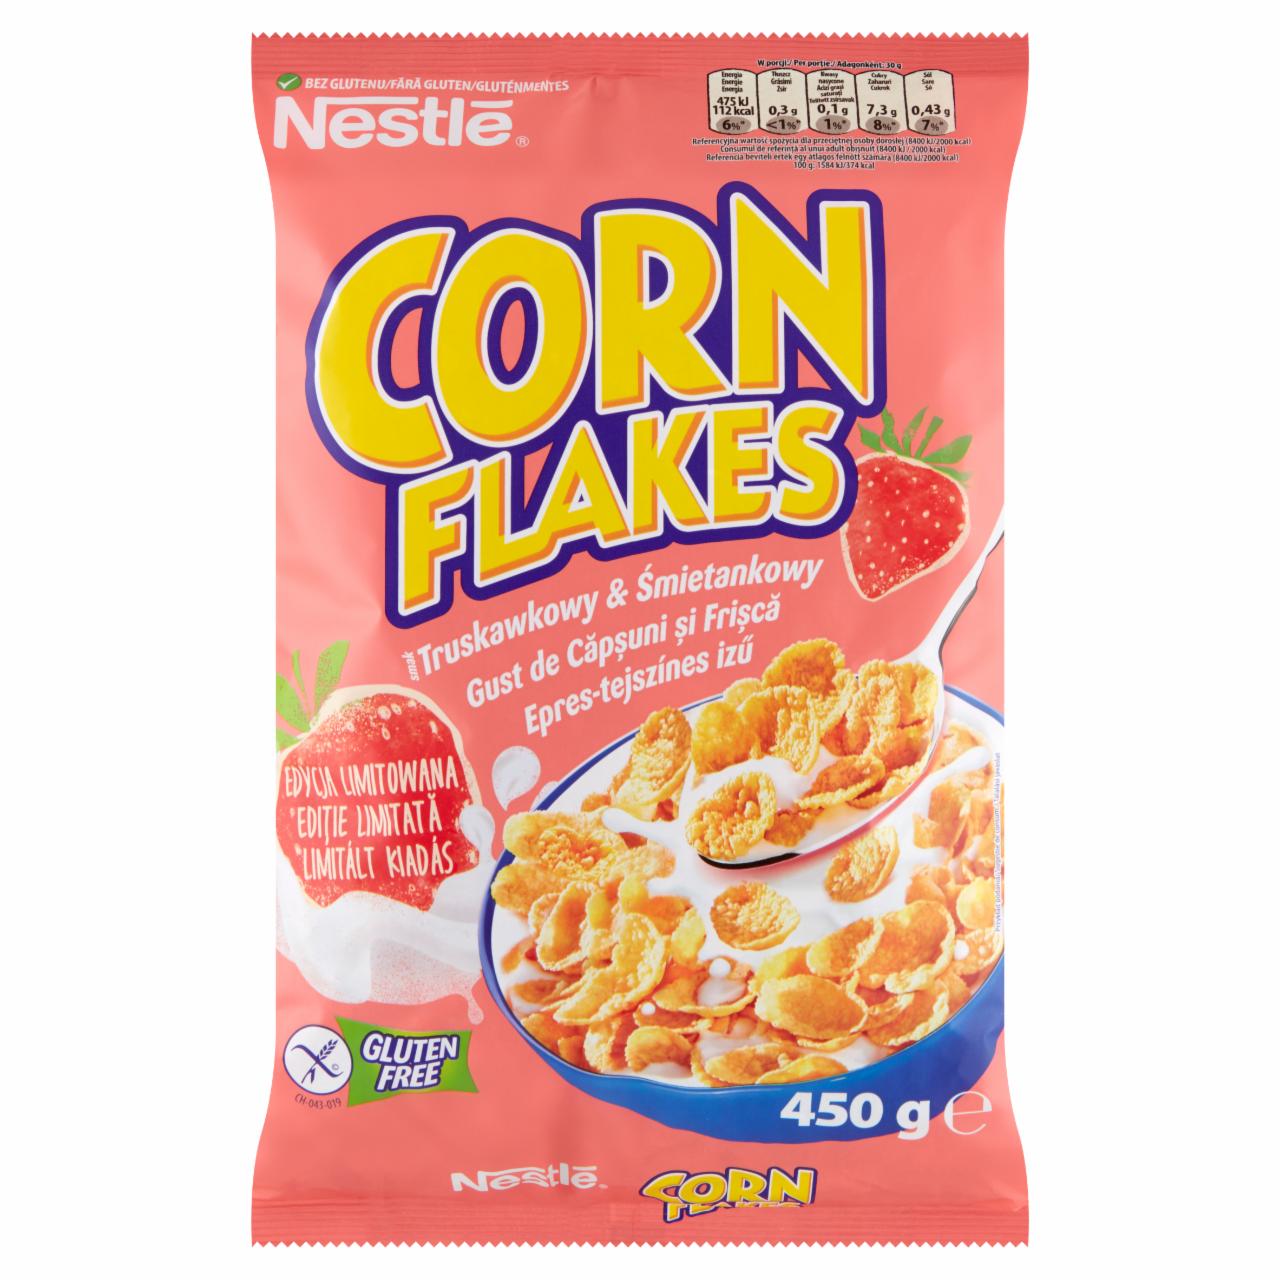 Zdjęcia - Corn Flakes Płatki kukurydziane smak truskawkowy & śmietankowy Nestlé